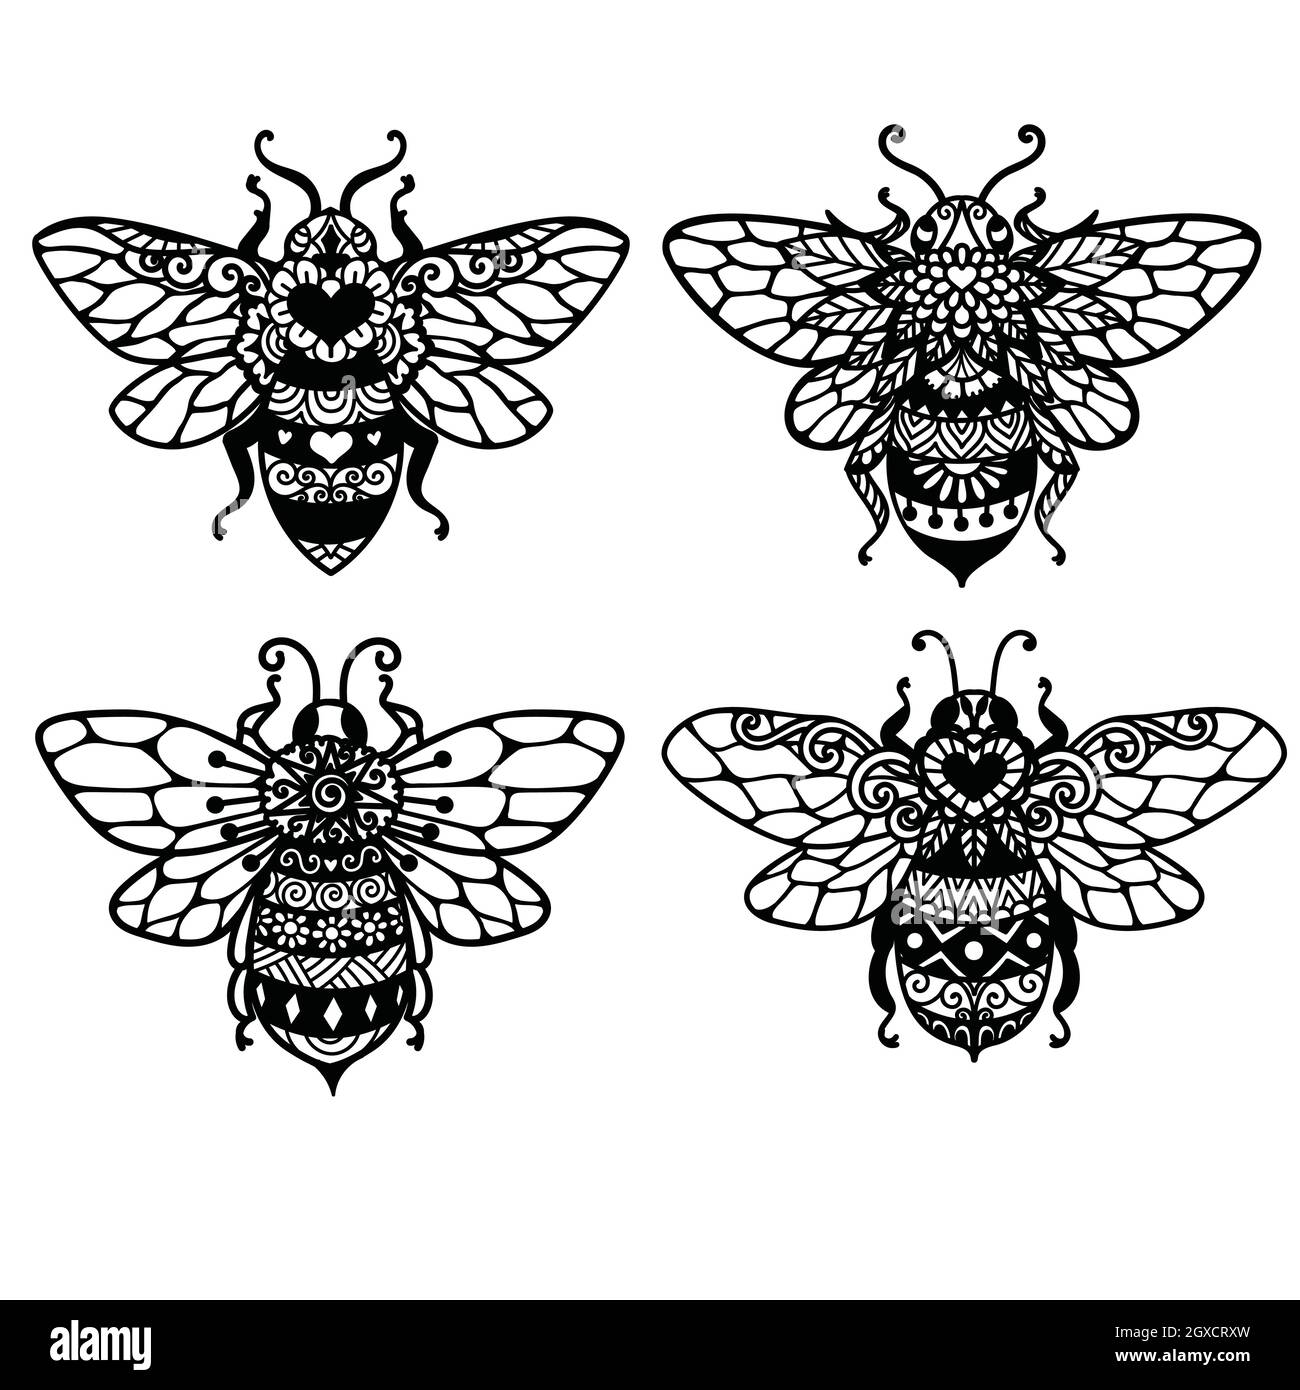 4 Stile orf Mandala Bienen für Erwachsene Malbuch, Druck, Gravur, Tattoo und so weiter. Vektorgrafik Stock Vektor